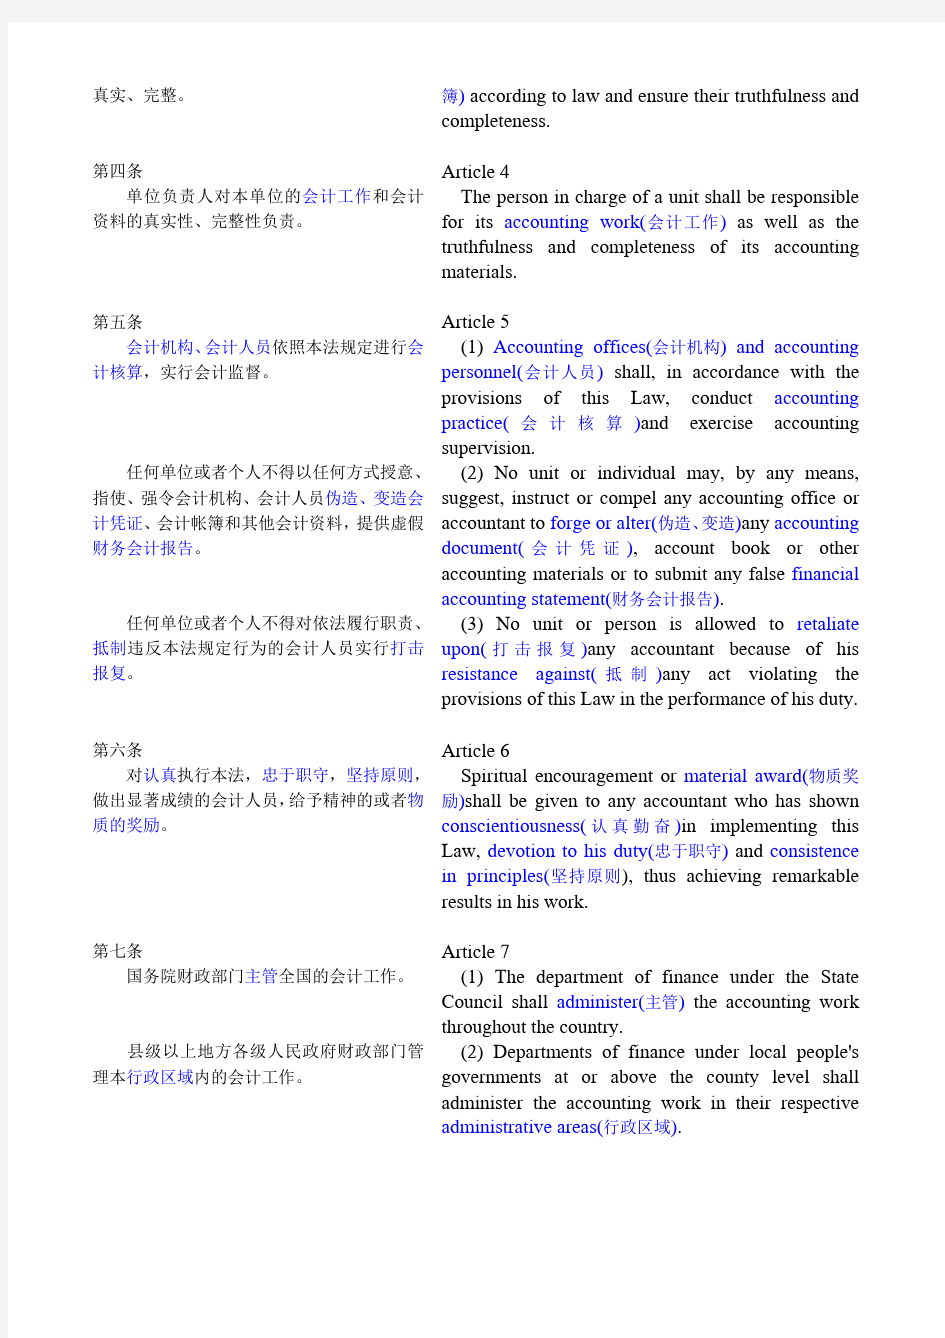 中华人民共和国会计法1999(中英文)Accounting Law of the PRC